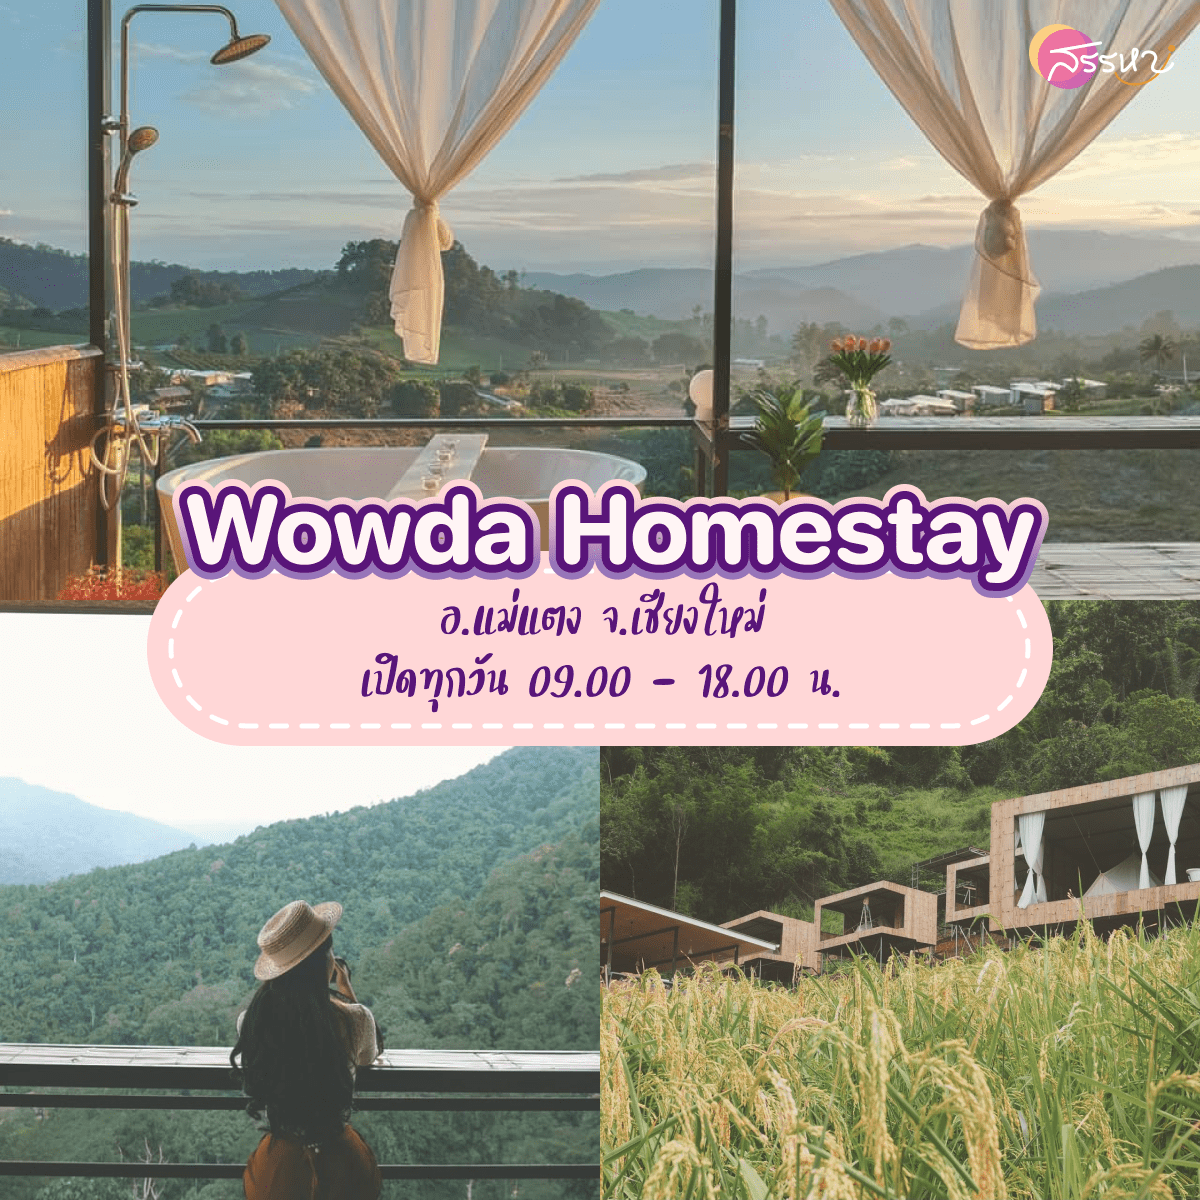 15 ที่เที่ยวเชียงใหม่ 2021-Wowda Homestay